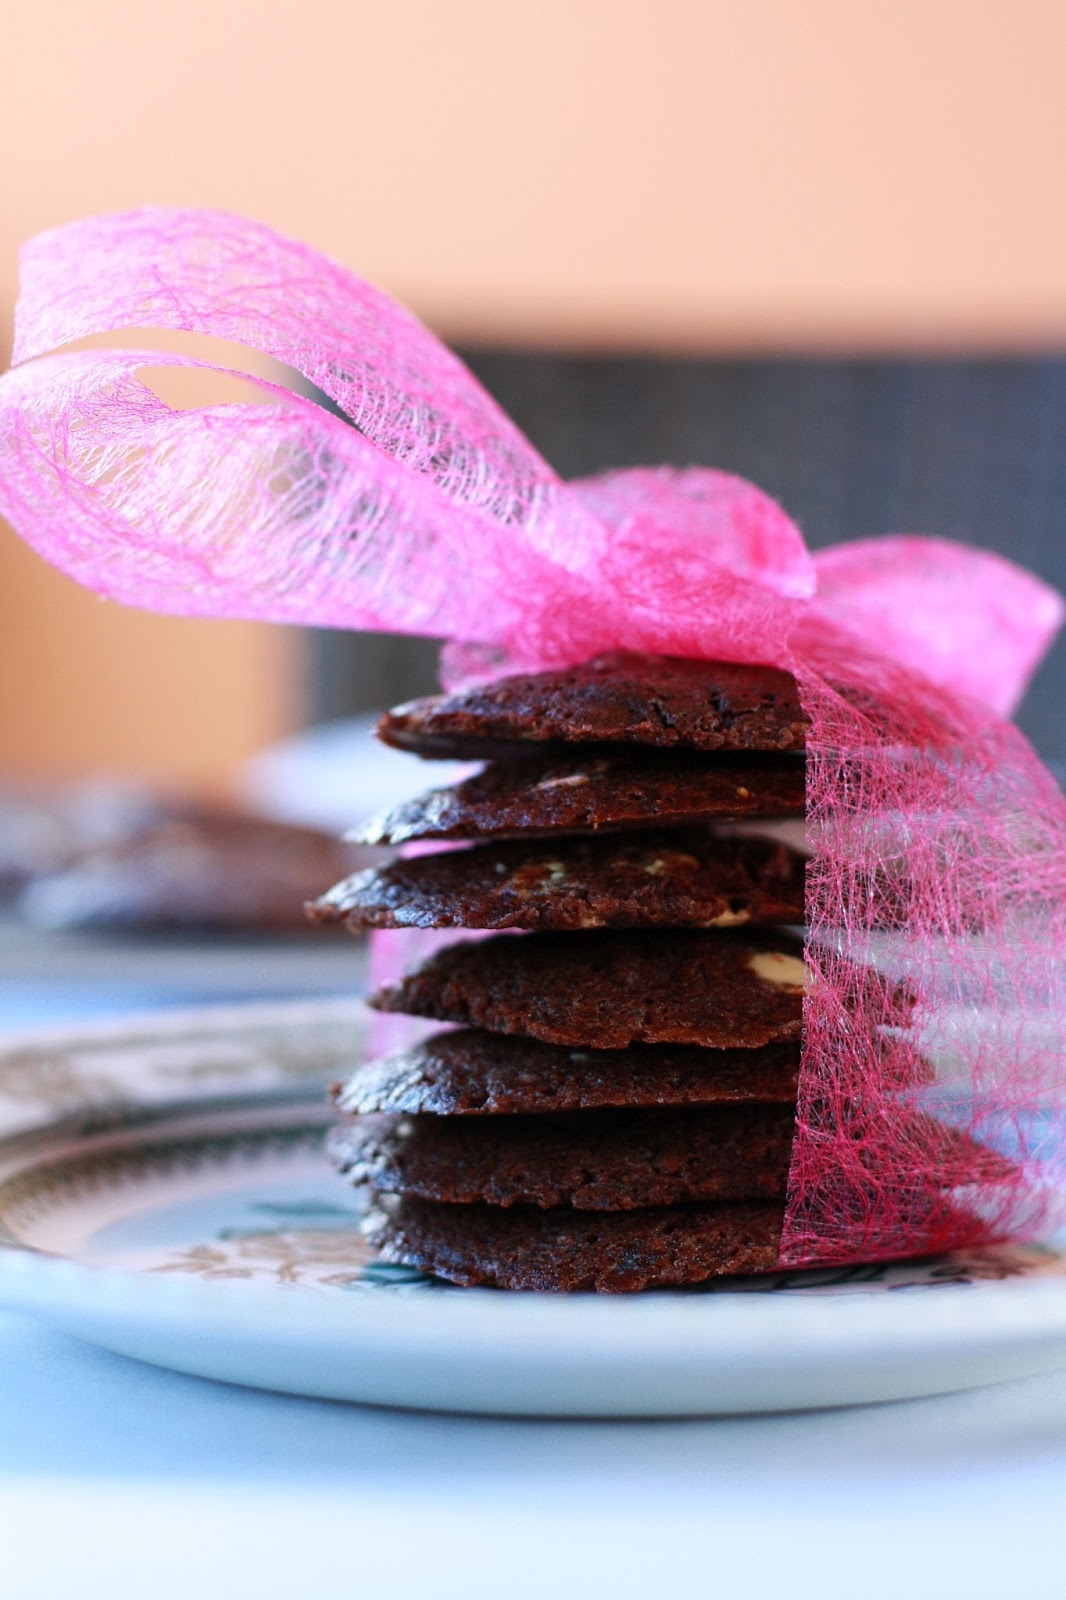 neljän suklaan suklaacookiet suklaakeksit keksi pikkuleipä cookie suklaa mallaspulla leivonta resepti